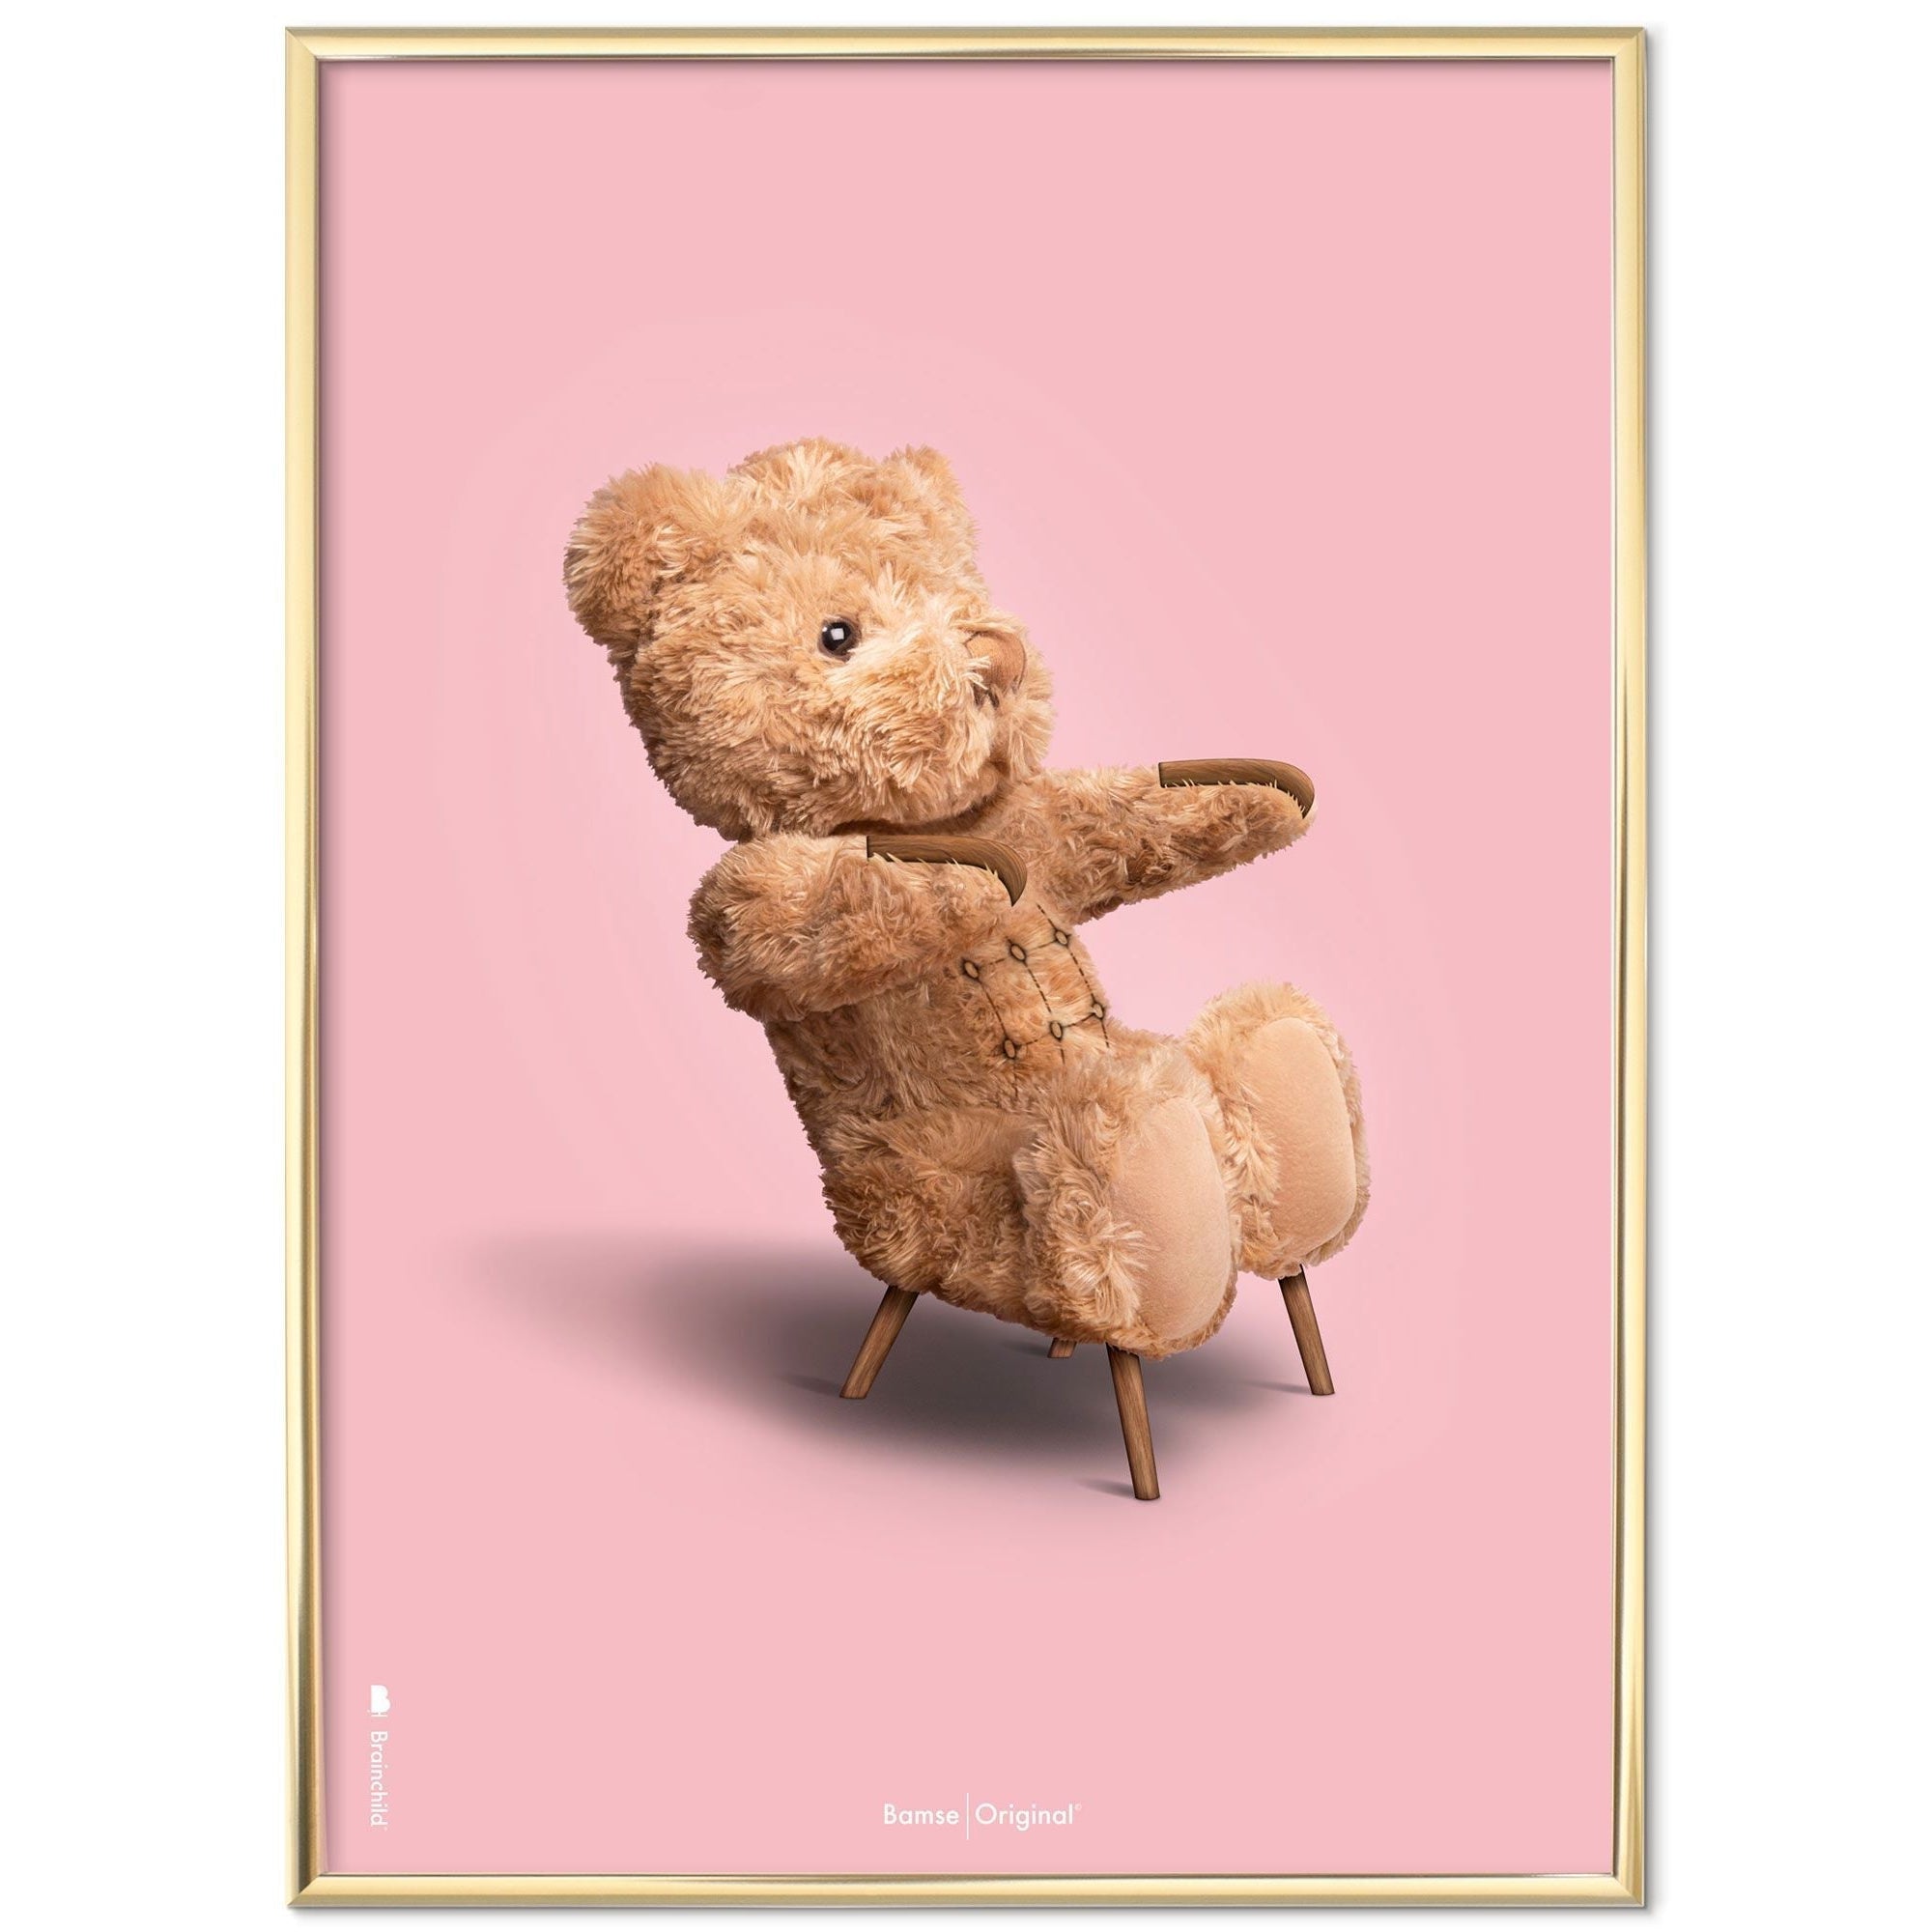 Brainchild Teddy Bear Classic plakát mosazného barevného rámu 50x70 cm, růžové pozadí